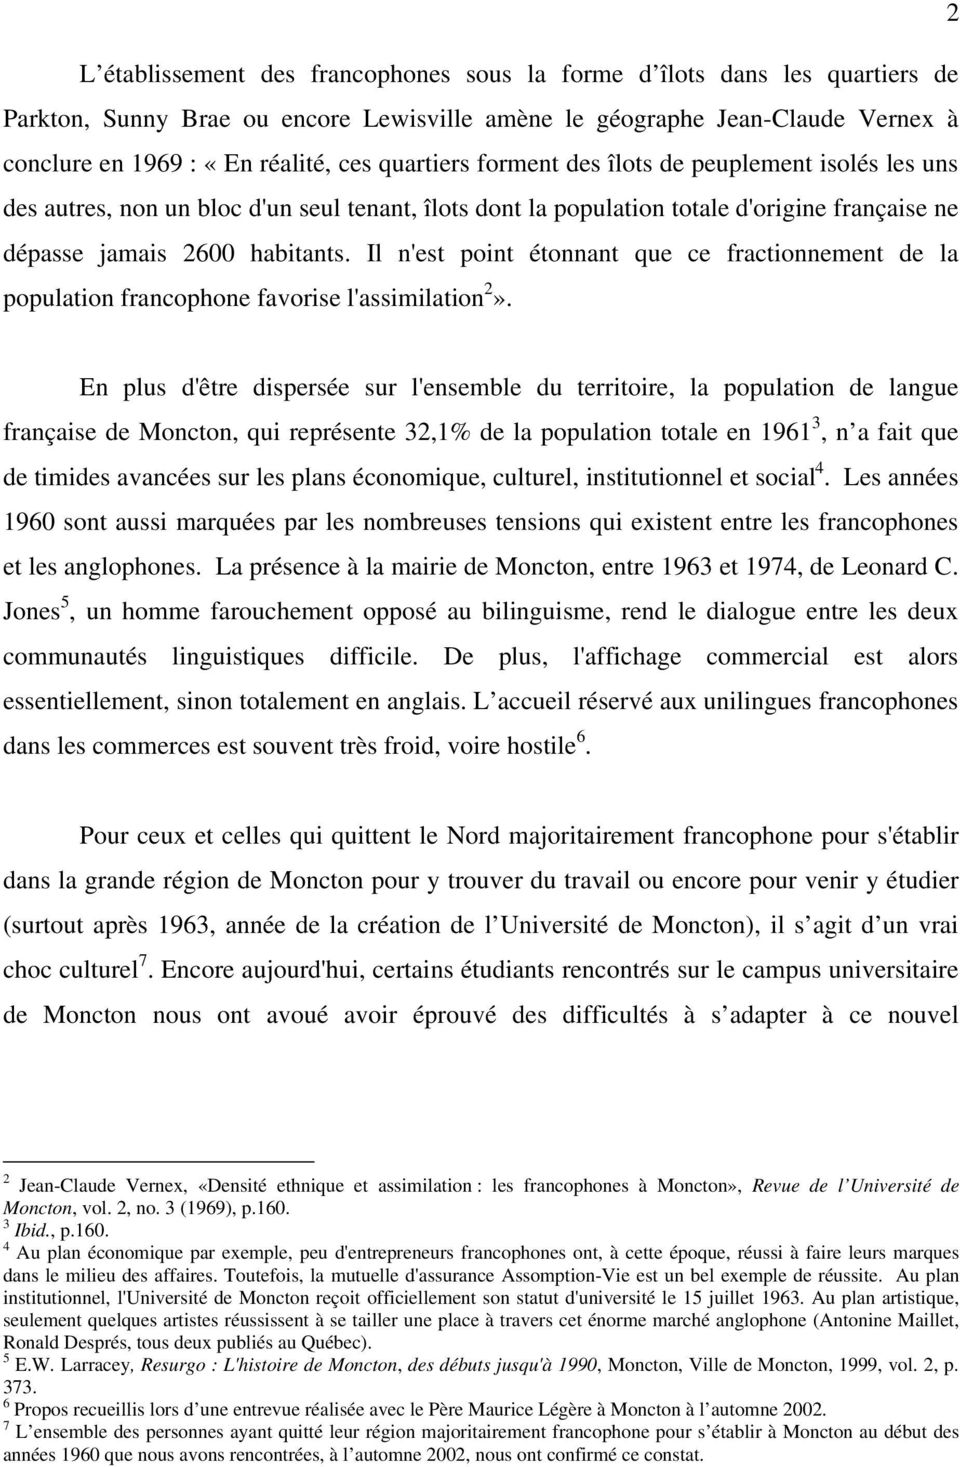 Il n'est point étonnant que ce fractionnement de la population francophone favorise l'assimilation 2».